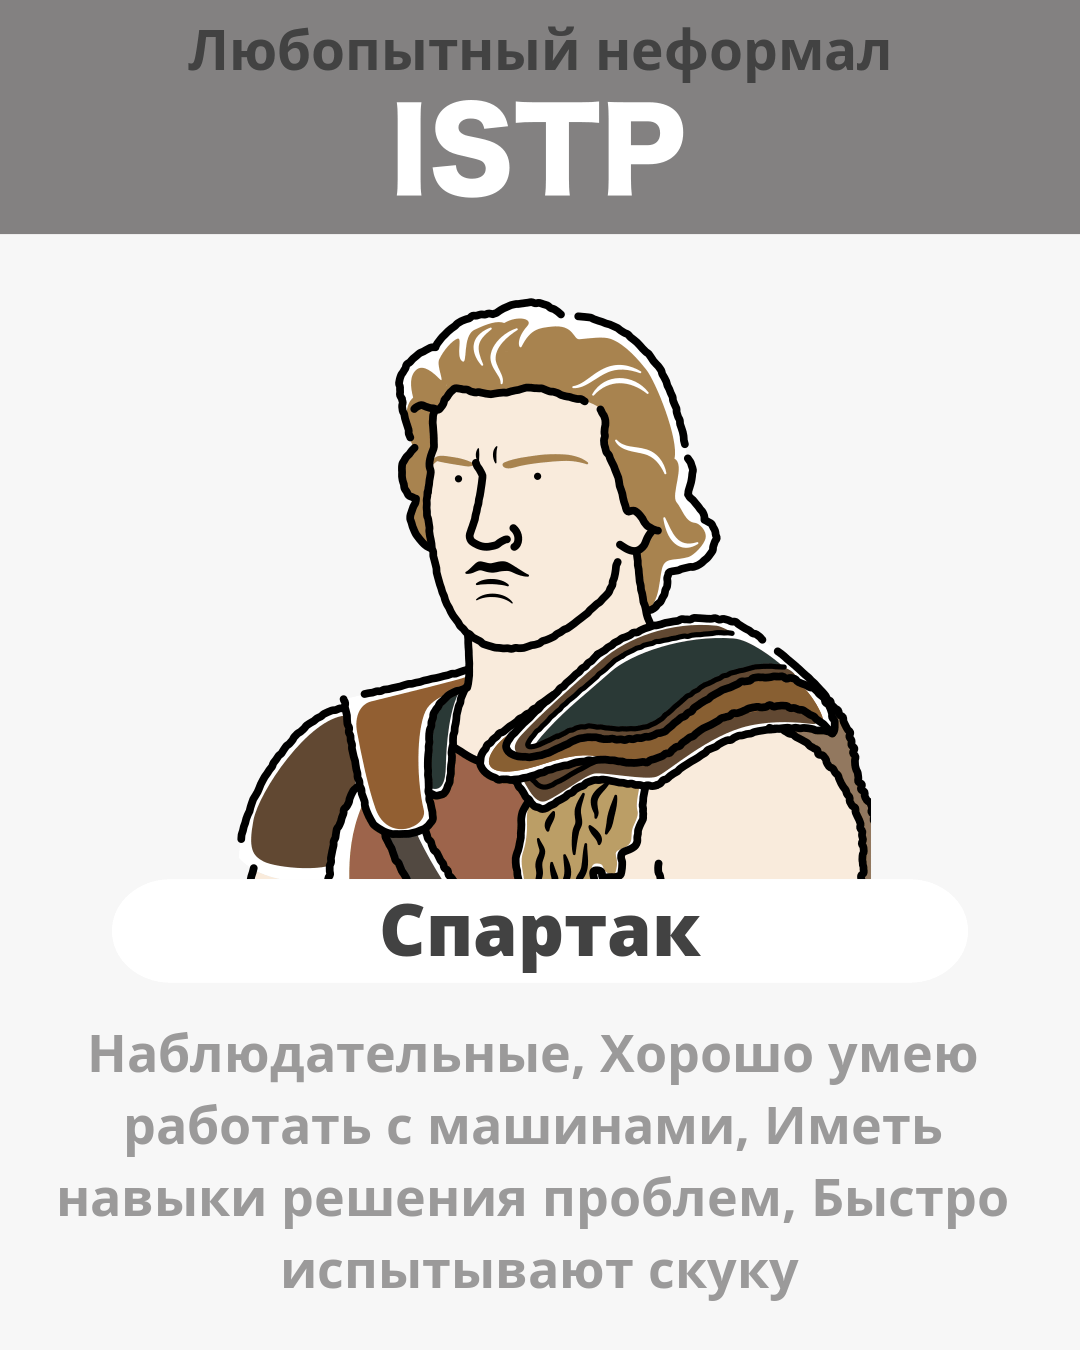 Спартак - ISTP